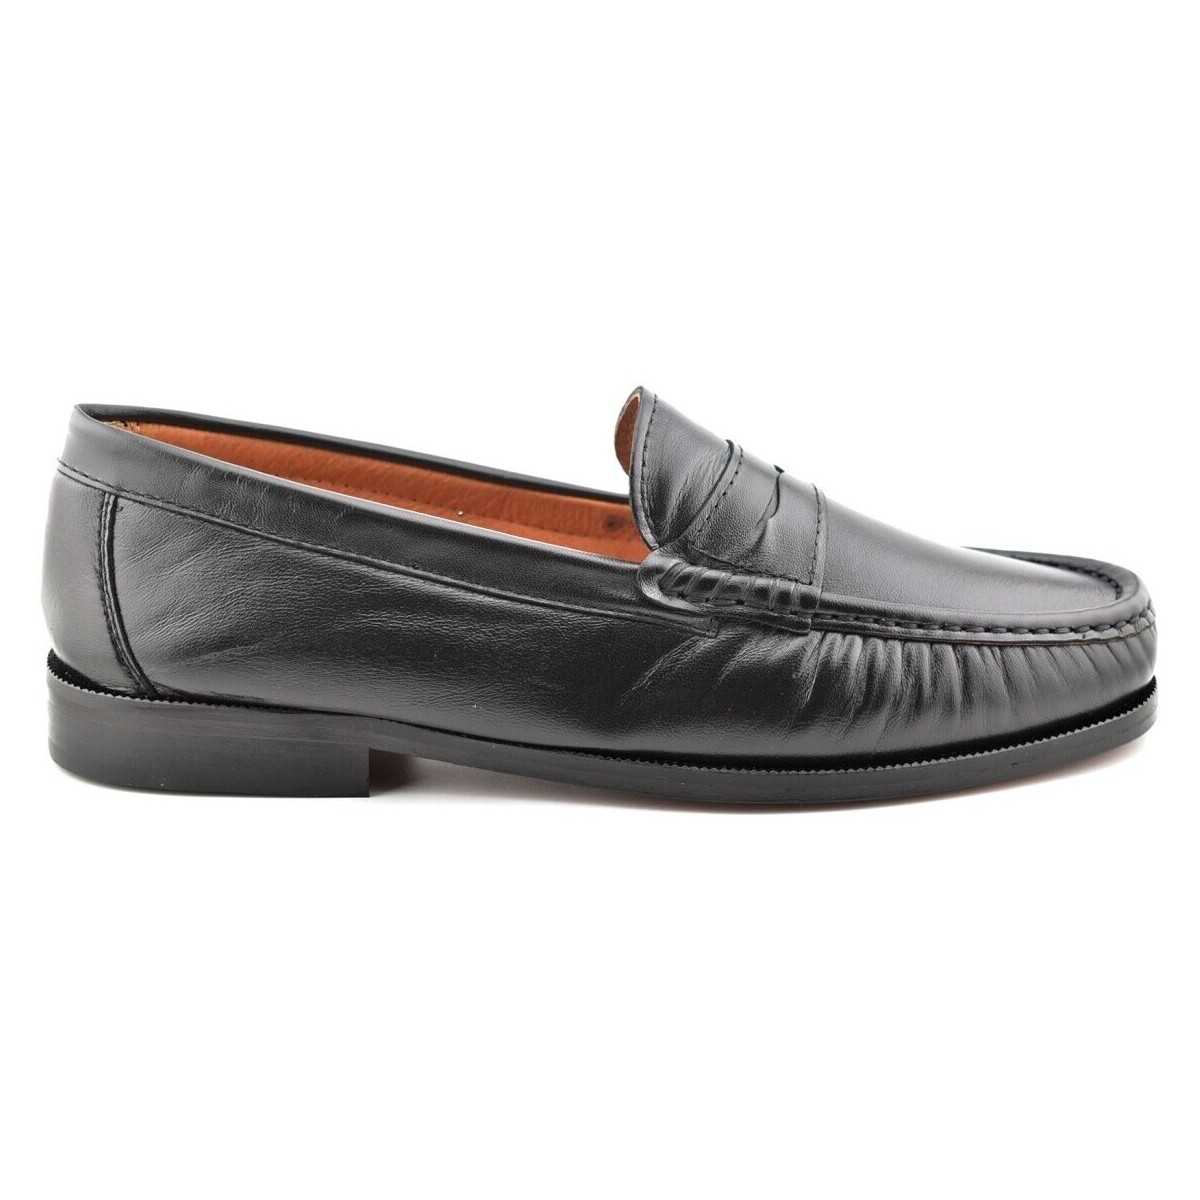 Zapatos Hombre Mocasín Latino Mocasines Clásicos negros de piel by Negro